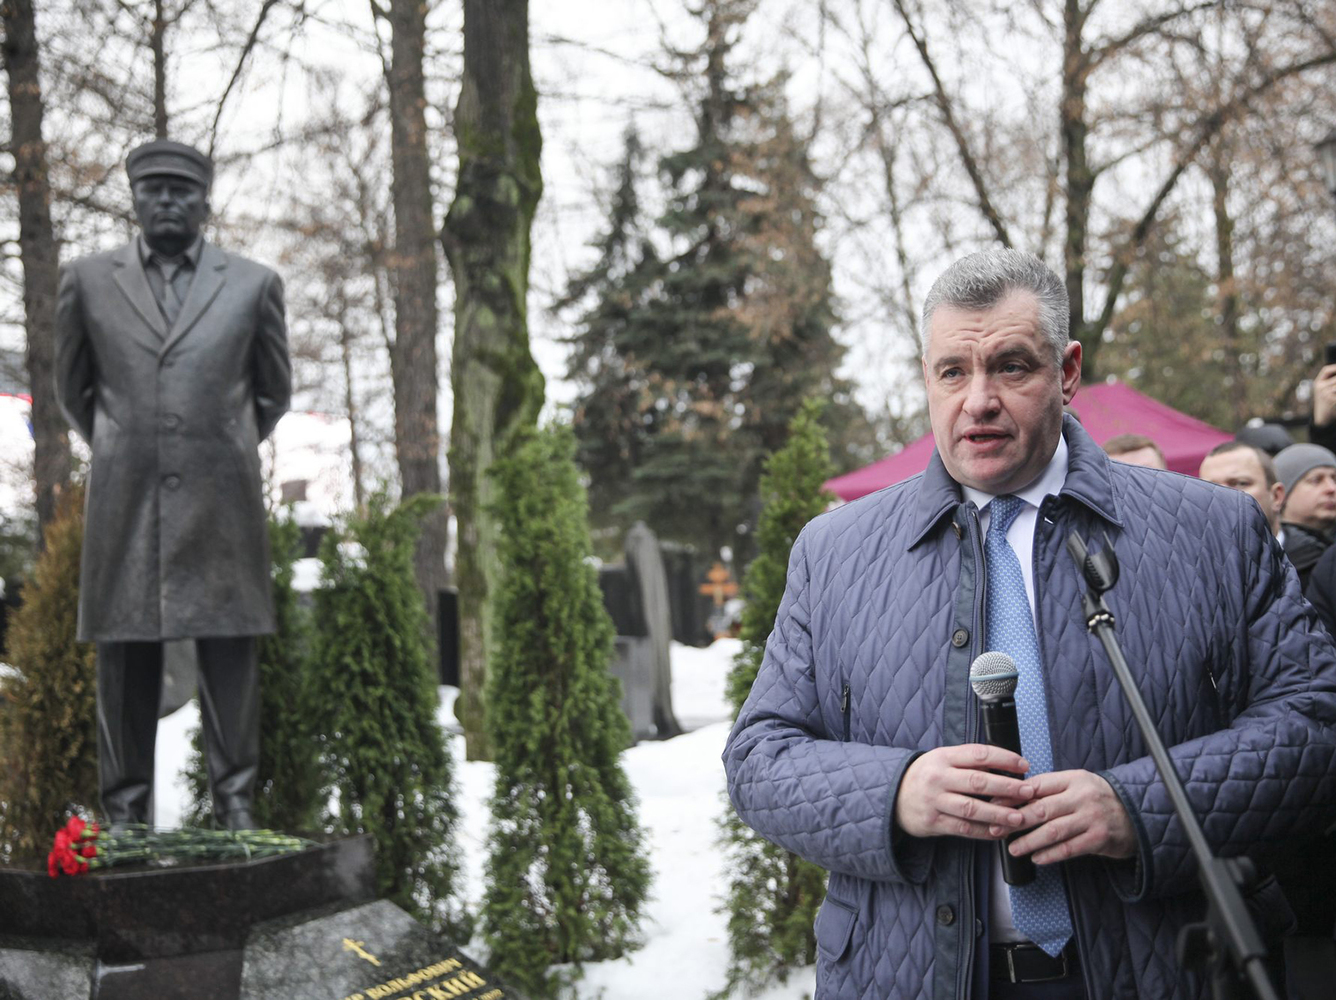 Слуцкий сказал речь на могиле Жириновского и был выдвинут в президенты: кадры мероприятия ЛДПР